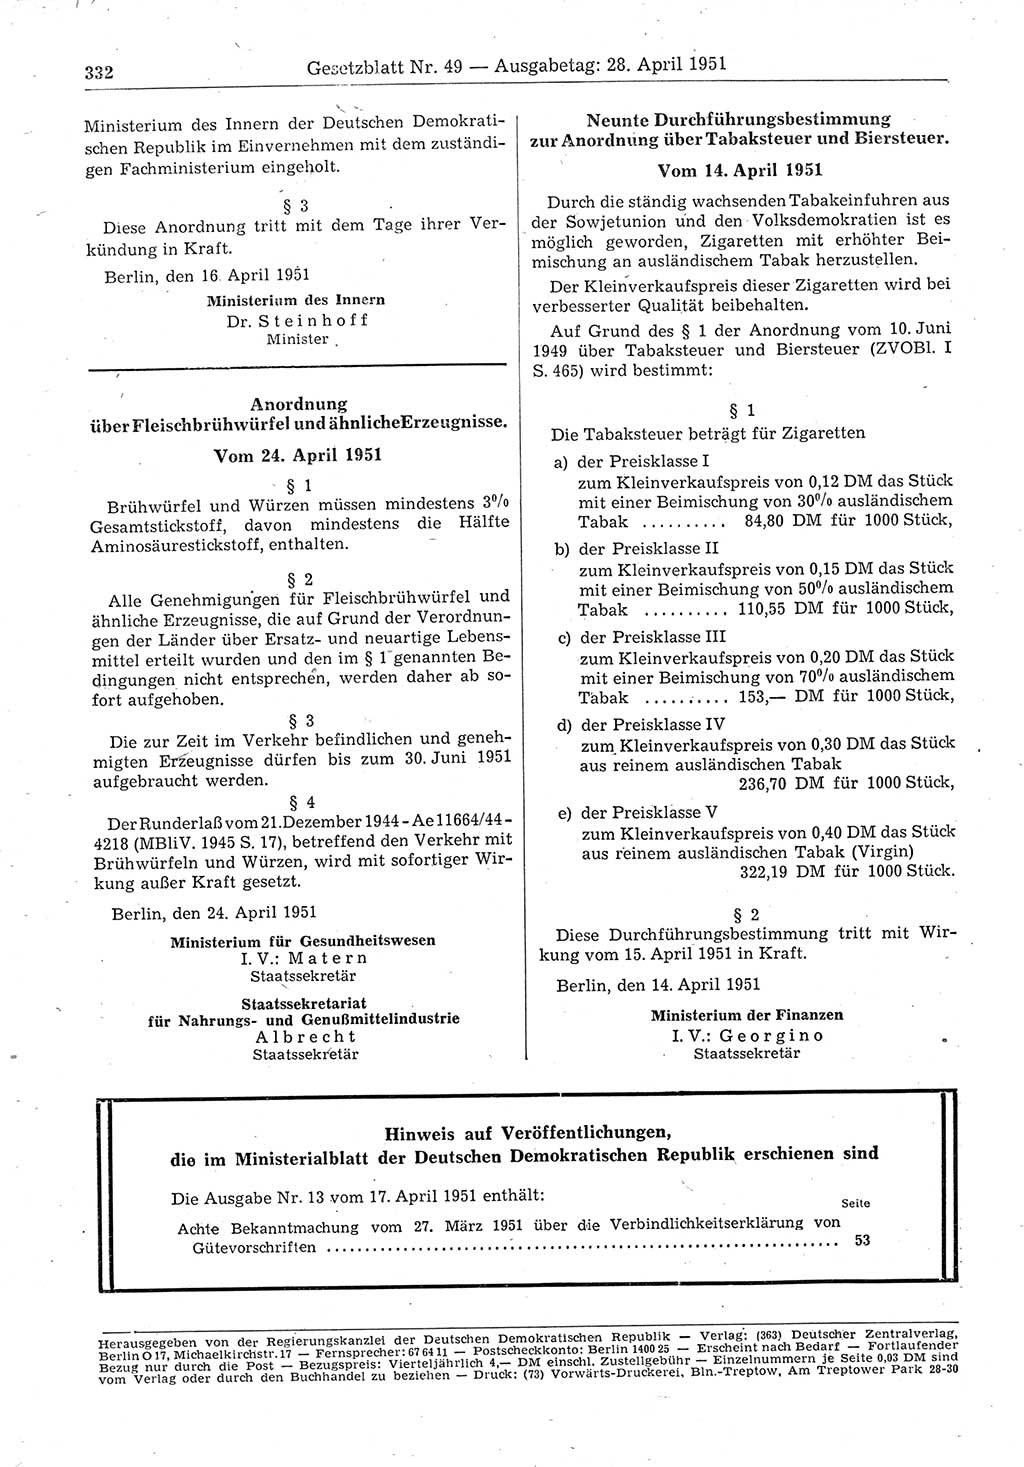 Gesetzblatt (GBl.) der Deutschen Demokratischen Republik (DDR) 1951, Seite 332 (GBl. DDR 1951, S. 332)